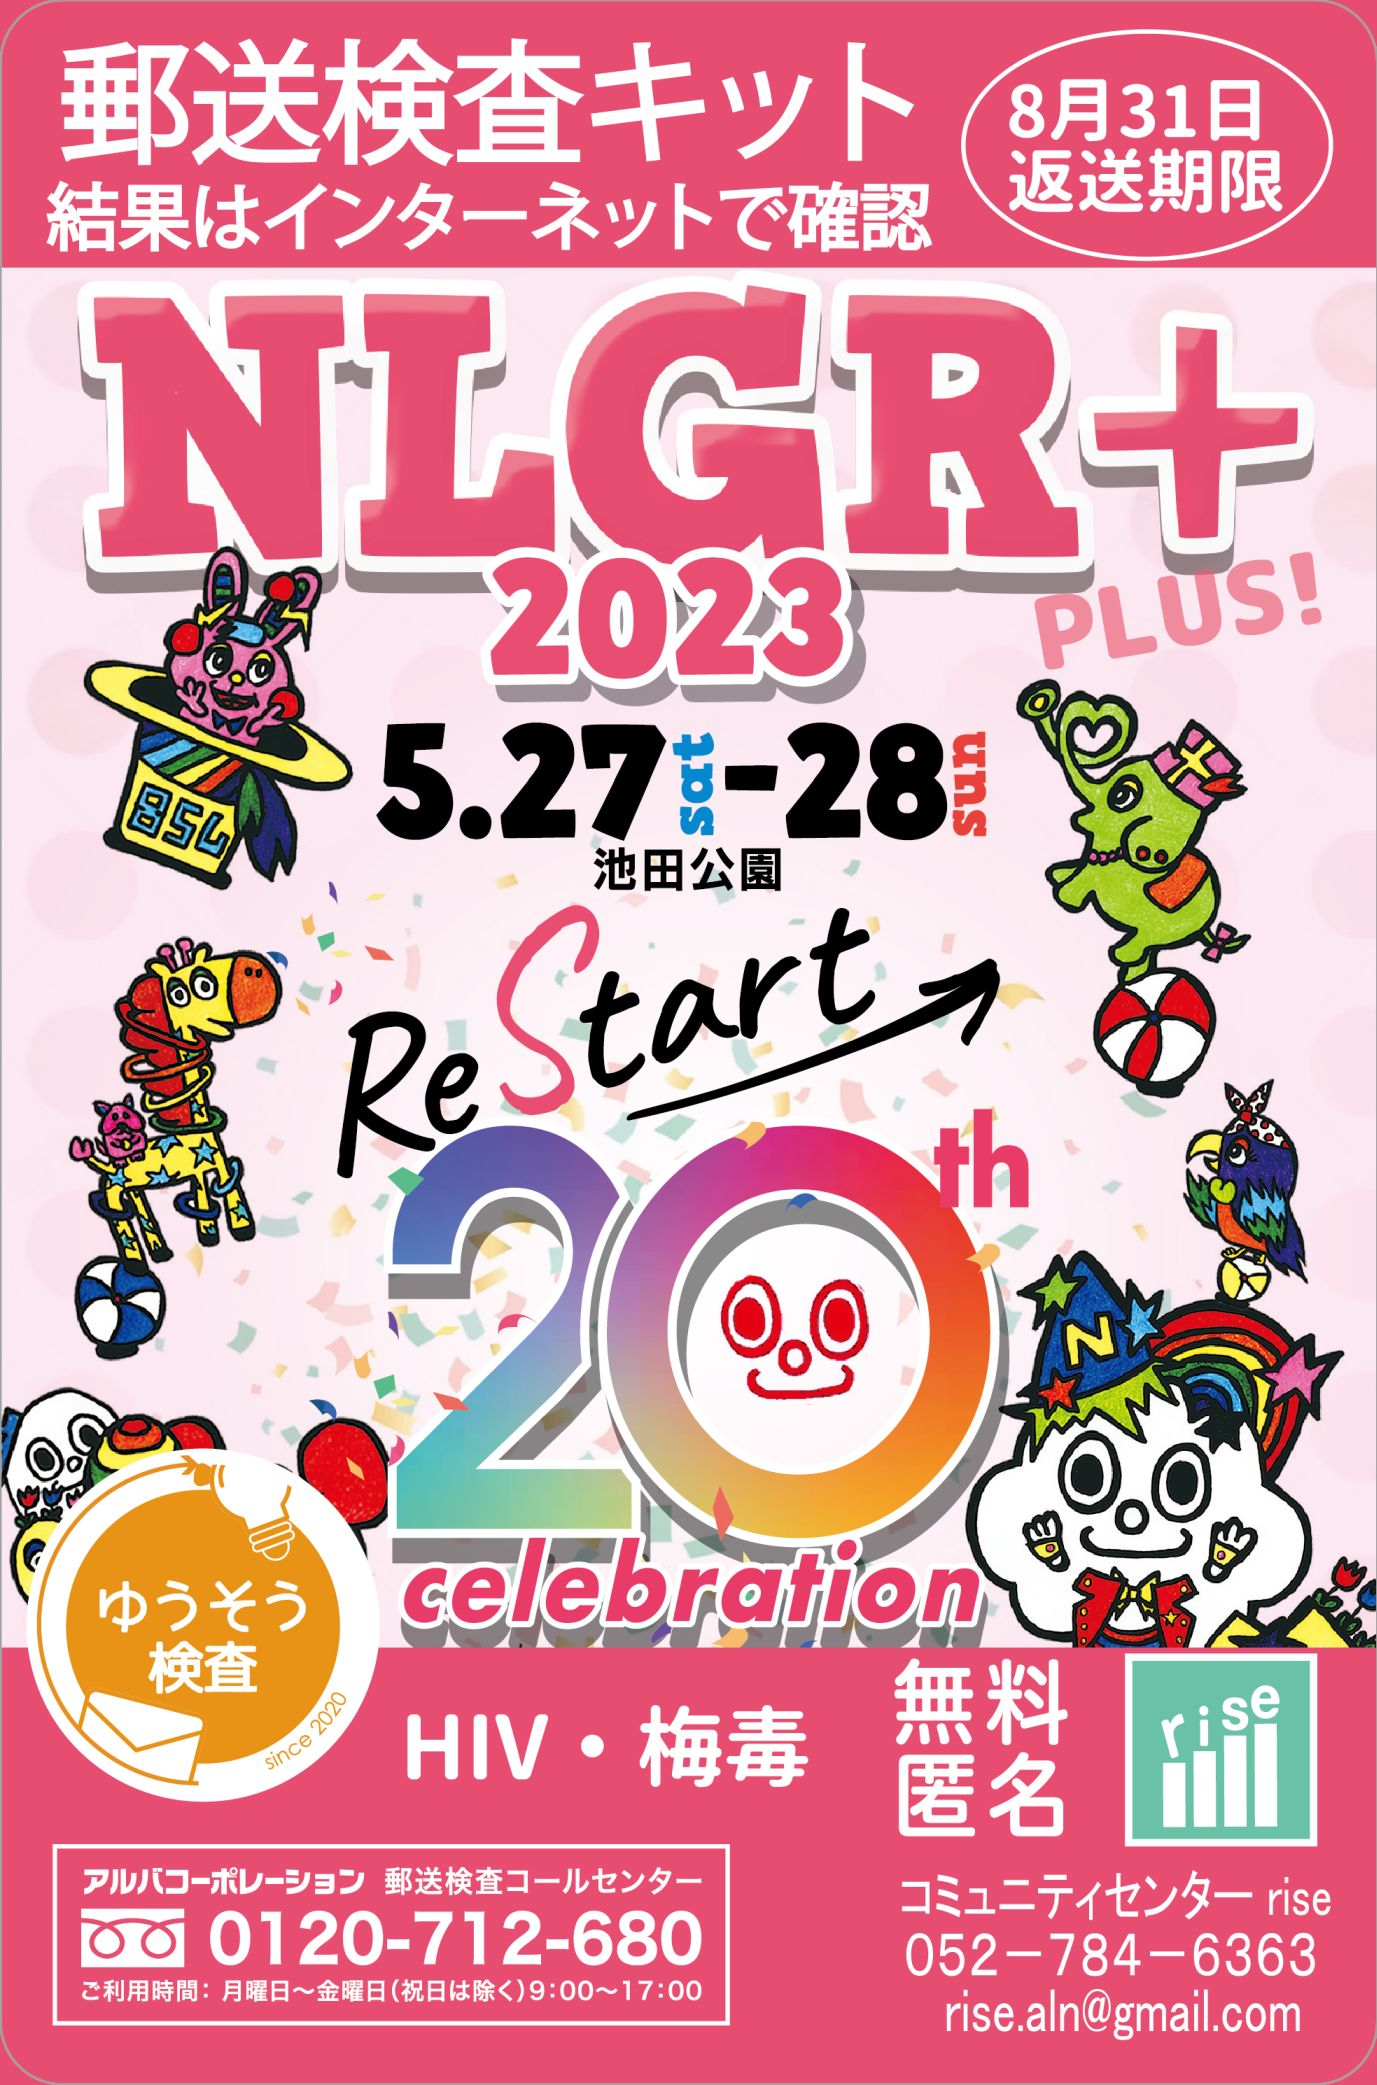 NLGR+2023【rise】